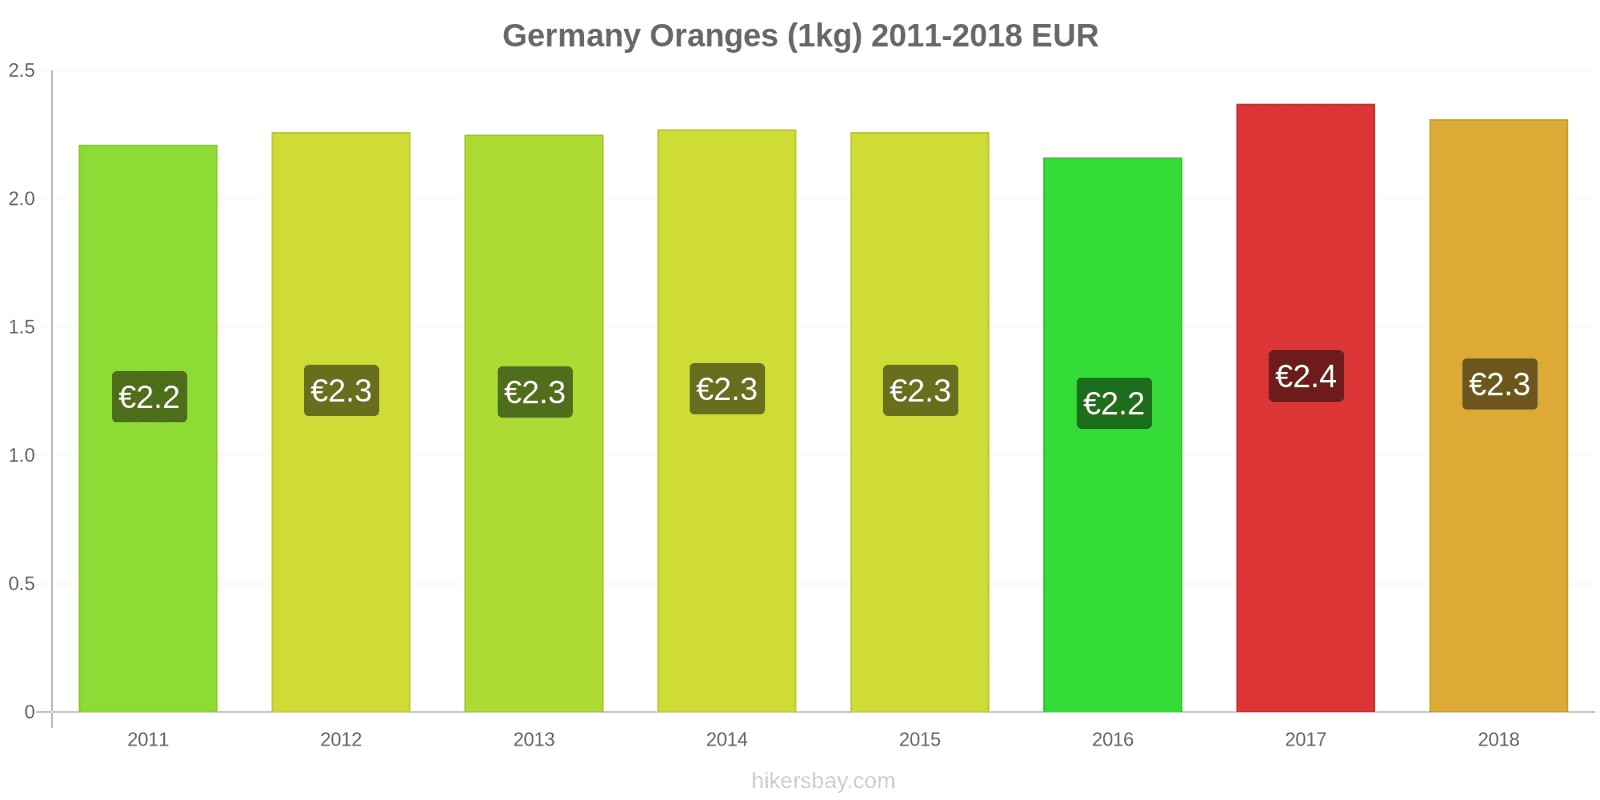 Germany price changes Oranges (1kg) hikersbay.com